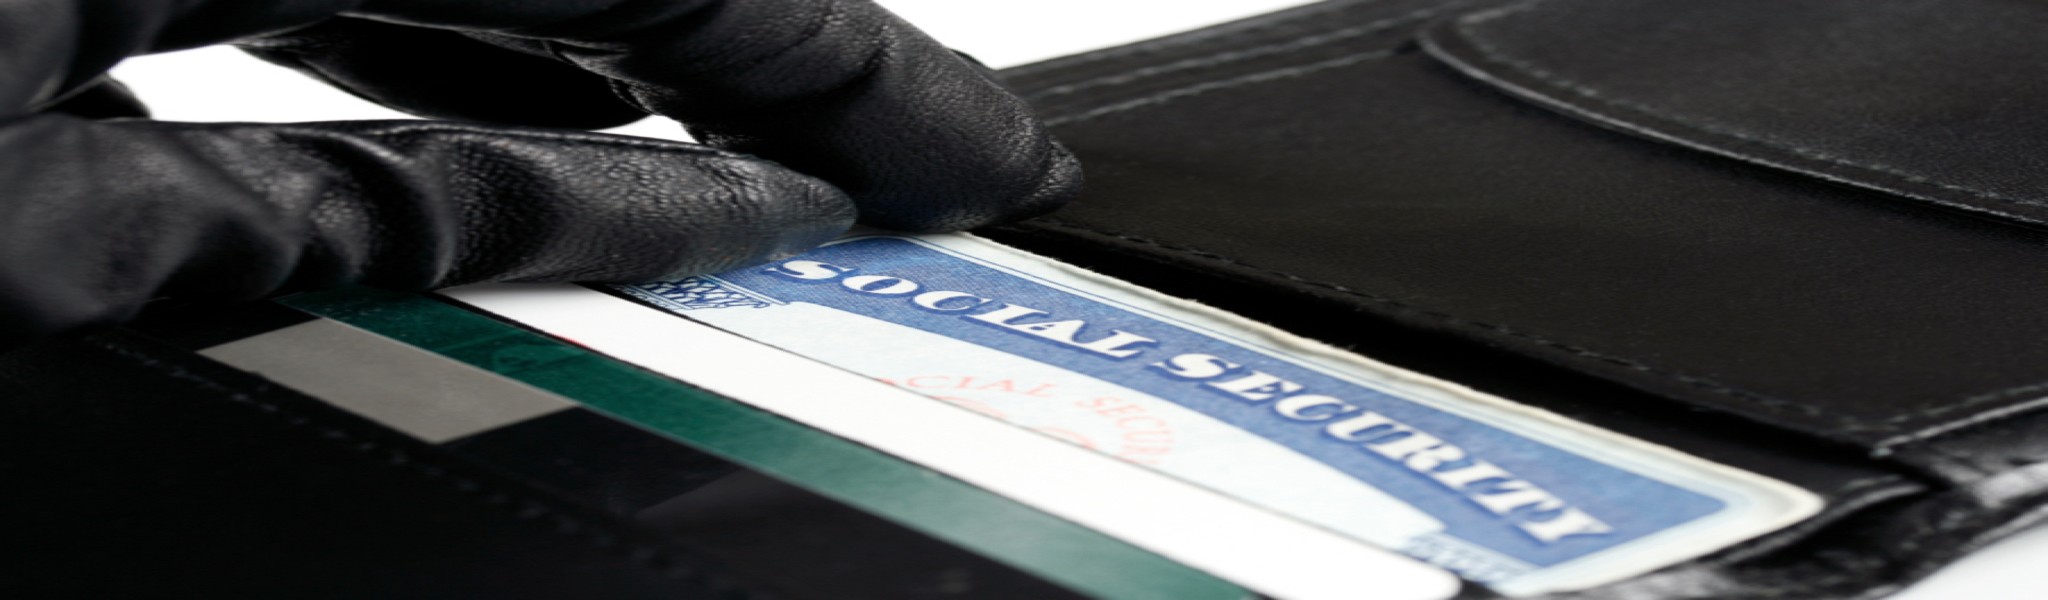 Social Security card & glove 2048×600